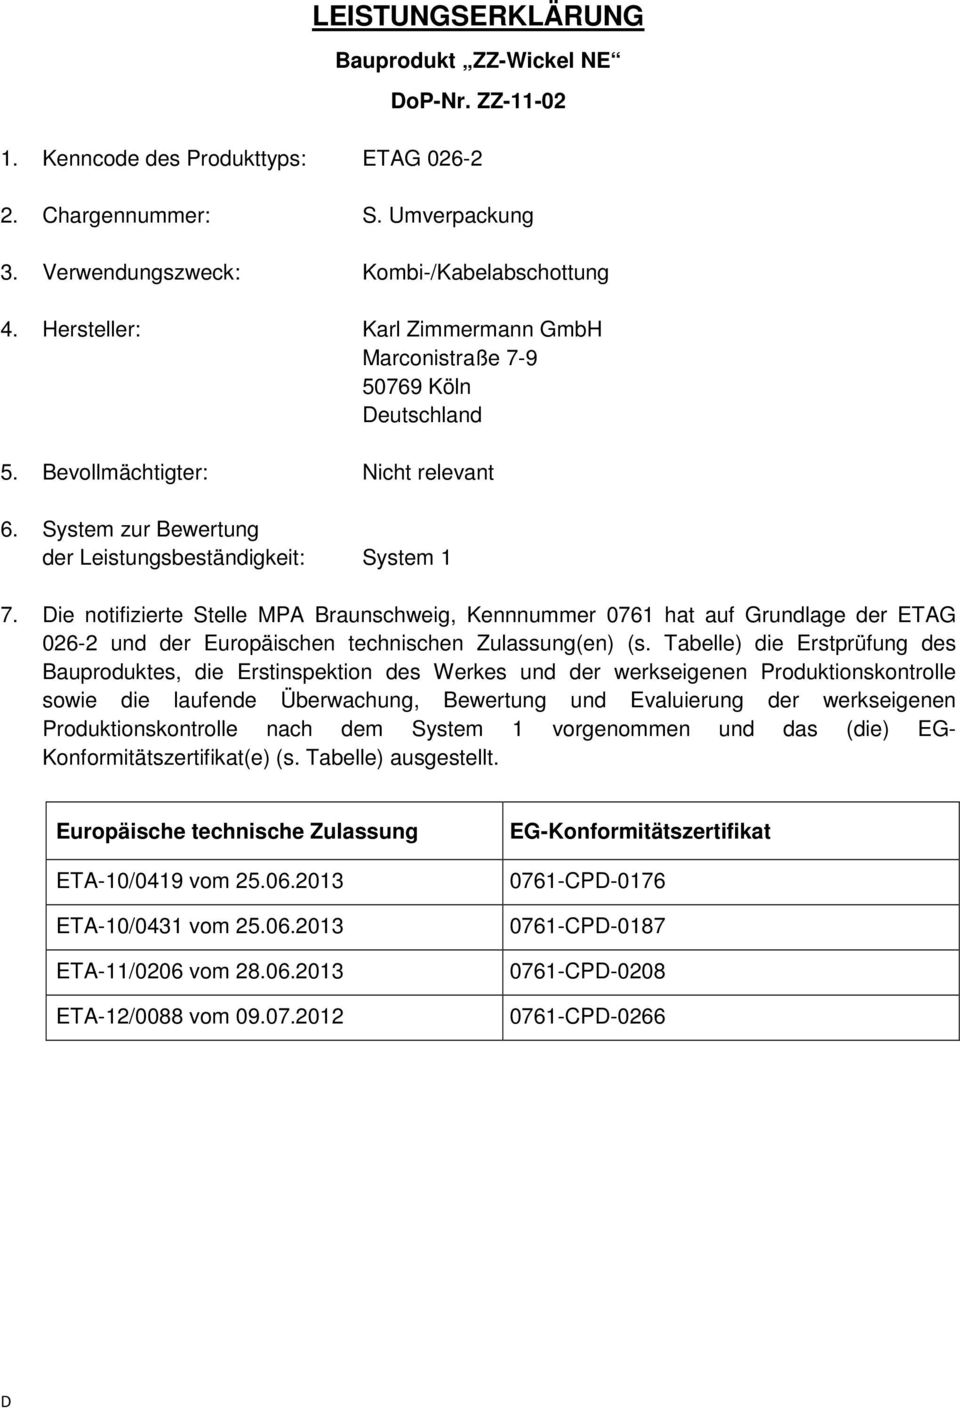 Die notifizierte Stelle MPA Braunschweig, Kennnummer 0761 hat auf Grundlage der ETAG 026-2 und der Europäischen technischen Zulassung(en) (s.